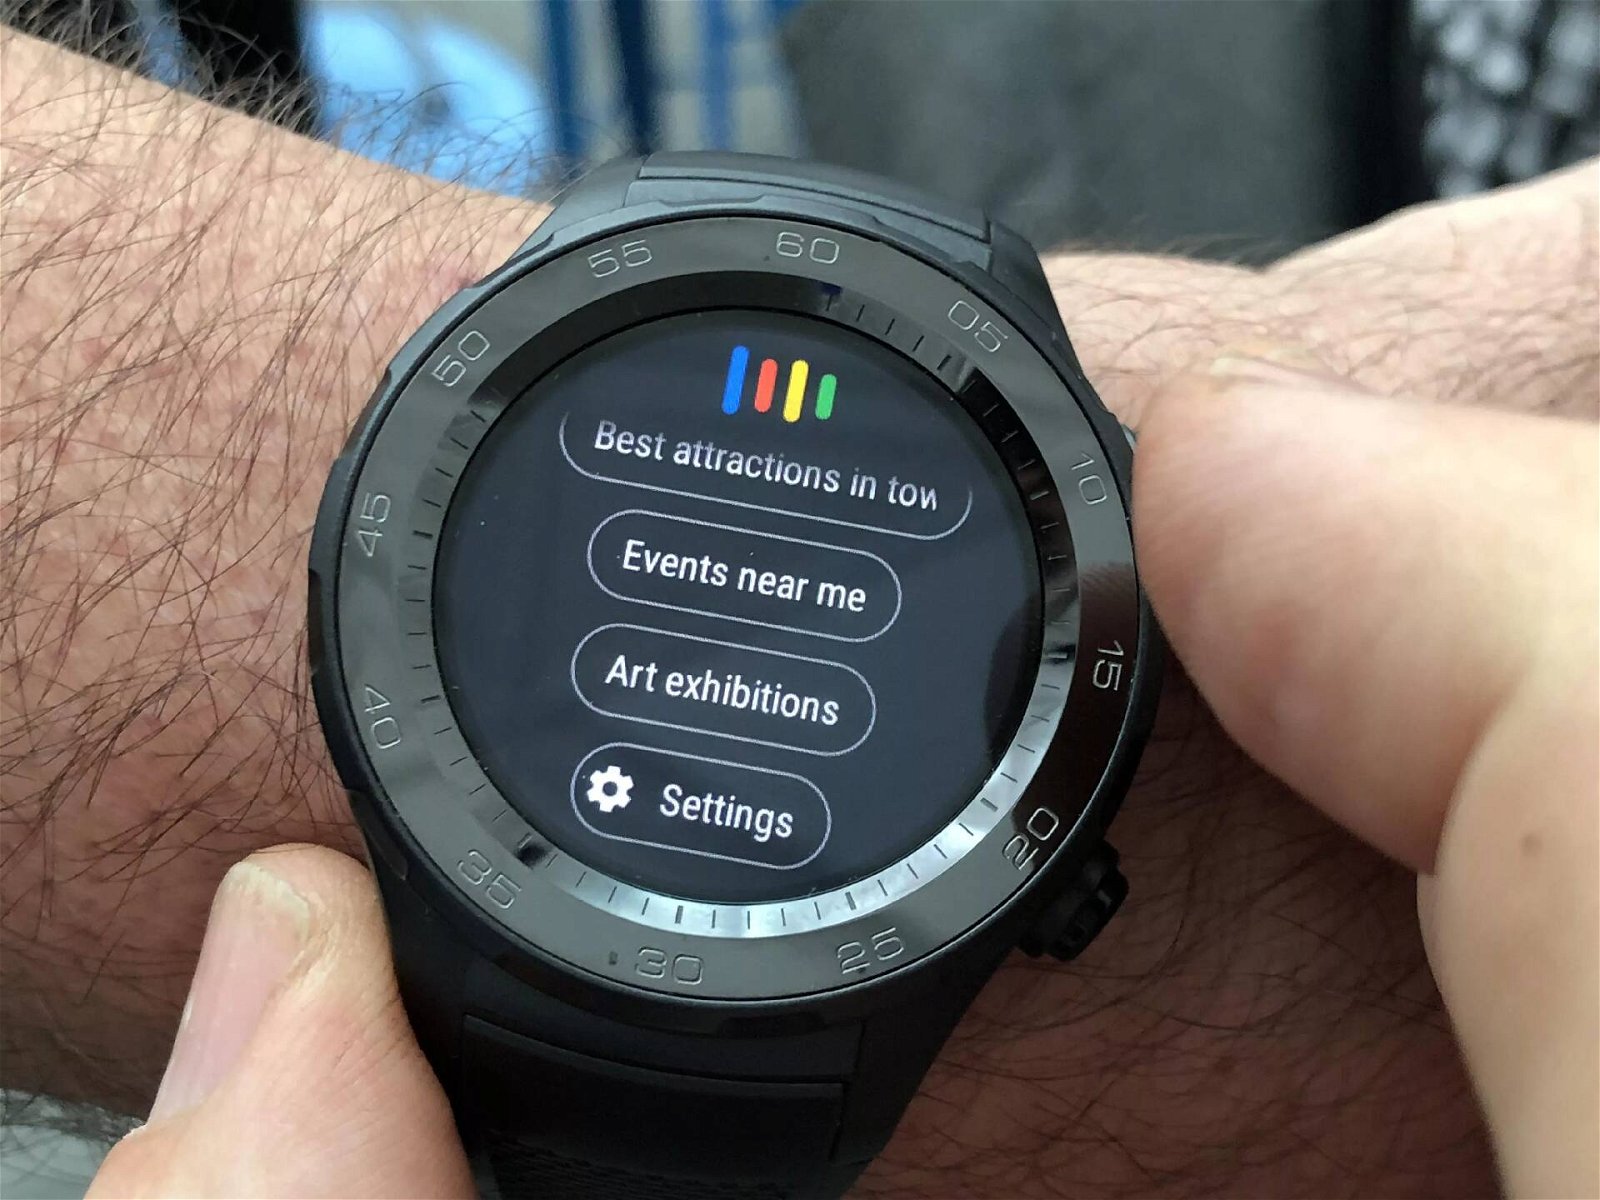 Immagine di OK Google non funziona sullo smartwatch? Tutto normale, purtroppo